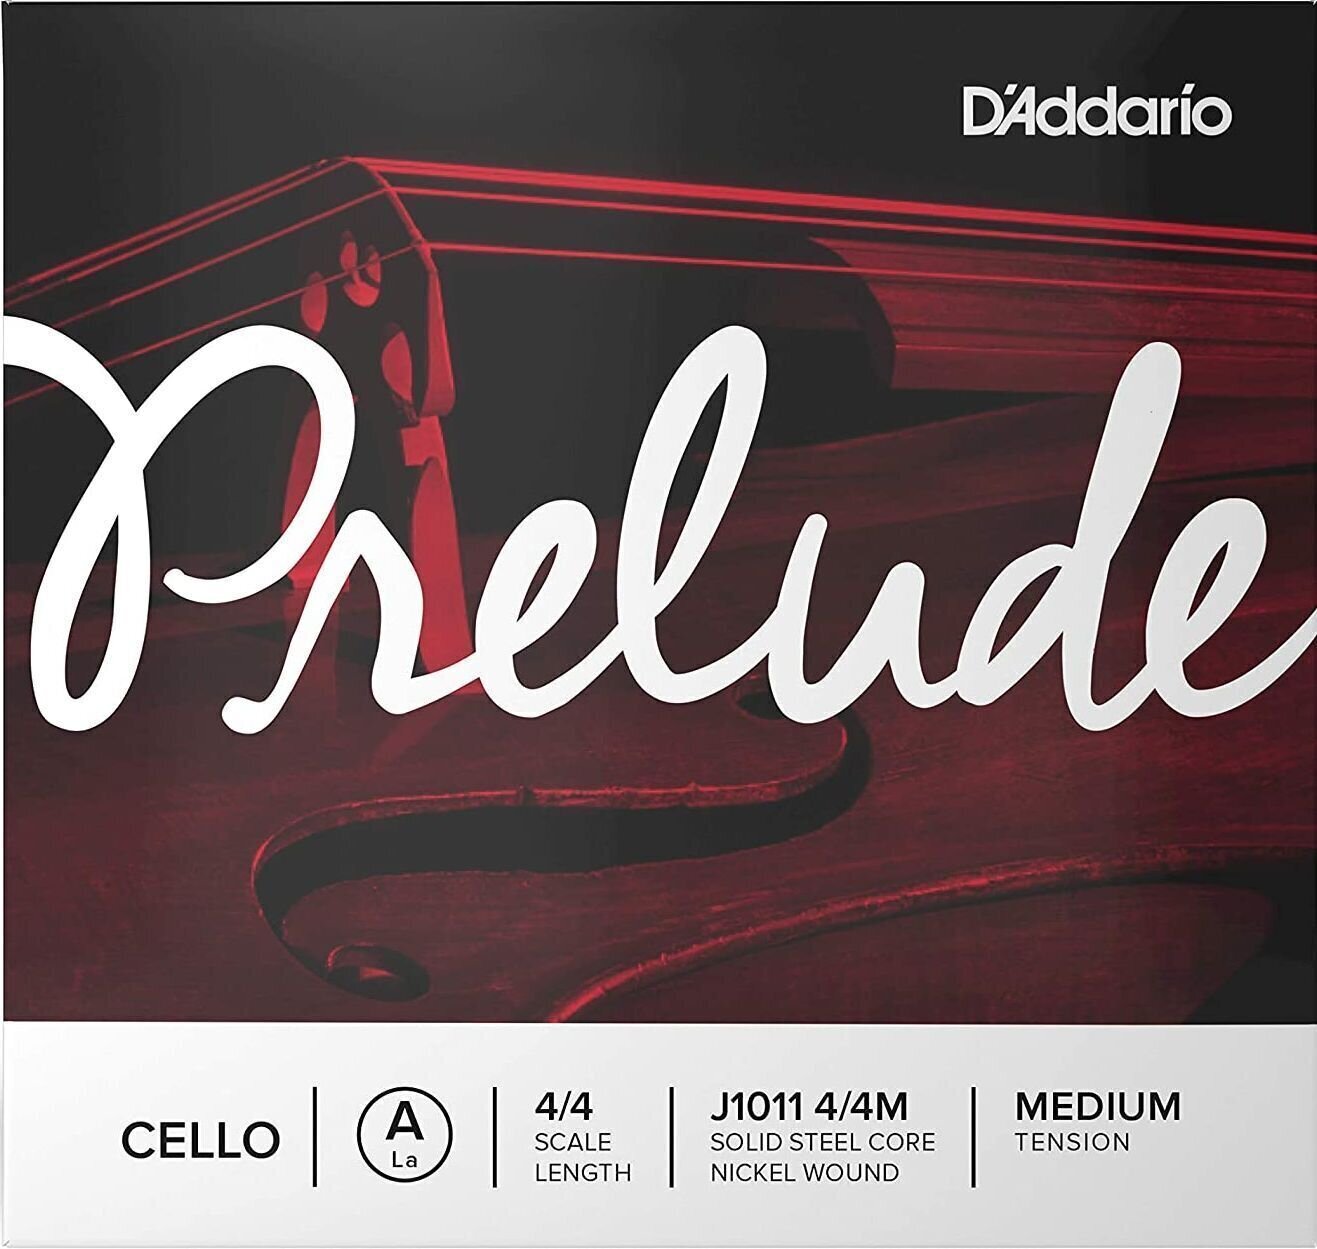 Corzi pentru violoncel D'Addario J1011 4/4M Prelude Corzi pentru violoncel